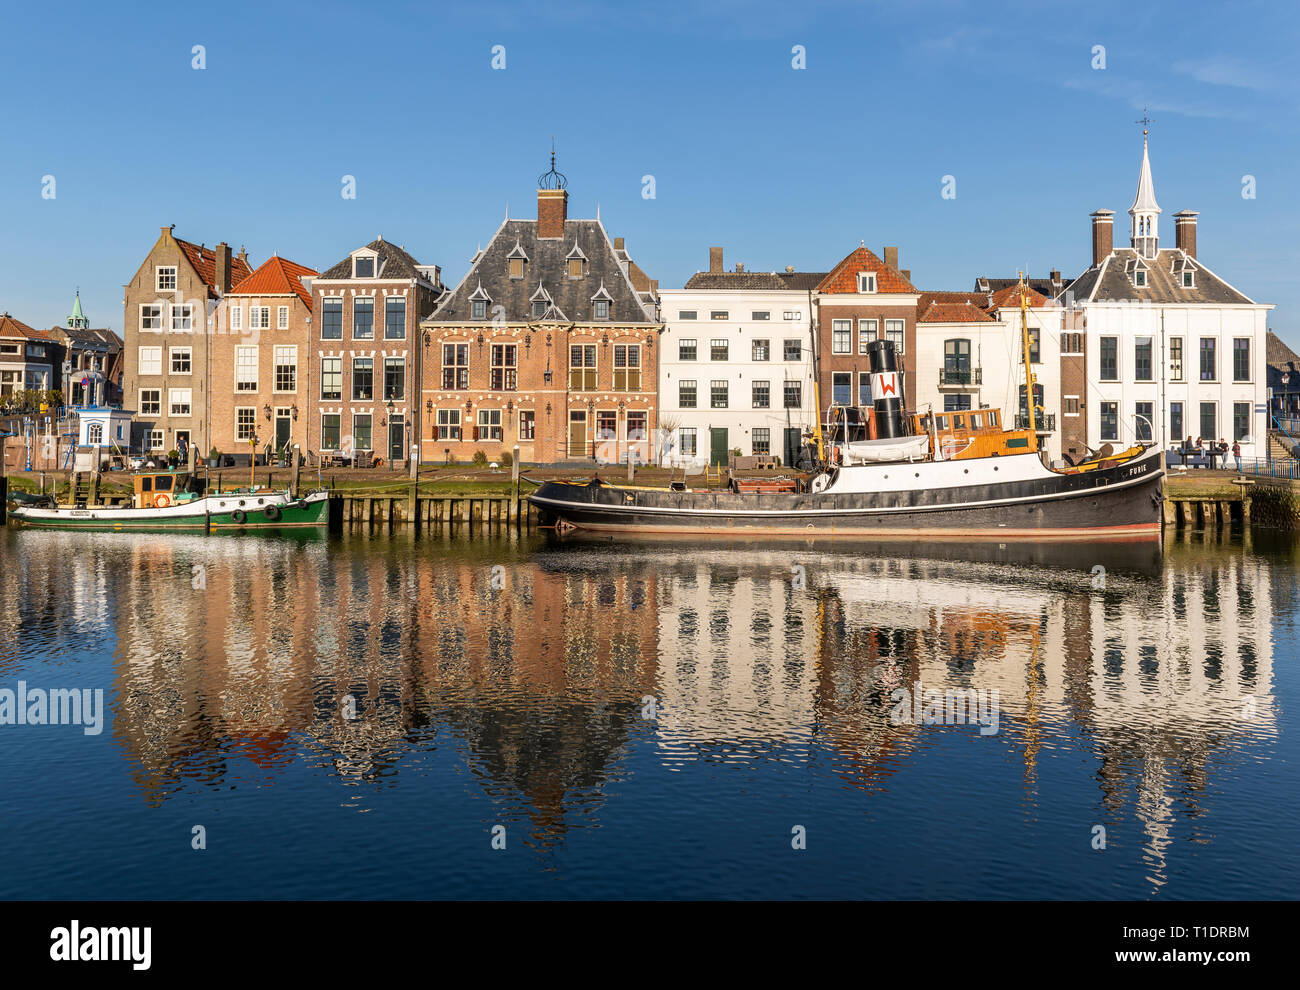 Maassluis, Niederlande - 26. Februar 2019: Der Hafen von Maassluis mit alten Boote, Schlepper und monumentale Häuser an einem sonnigen Tag. Stockfoto